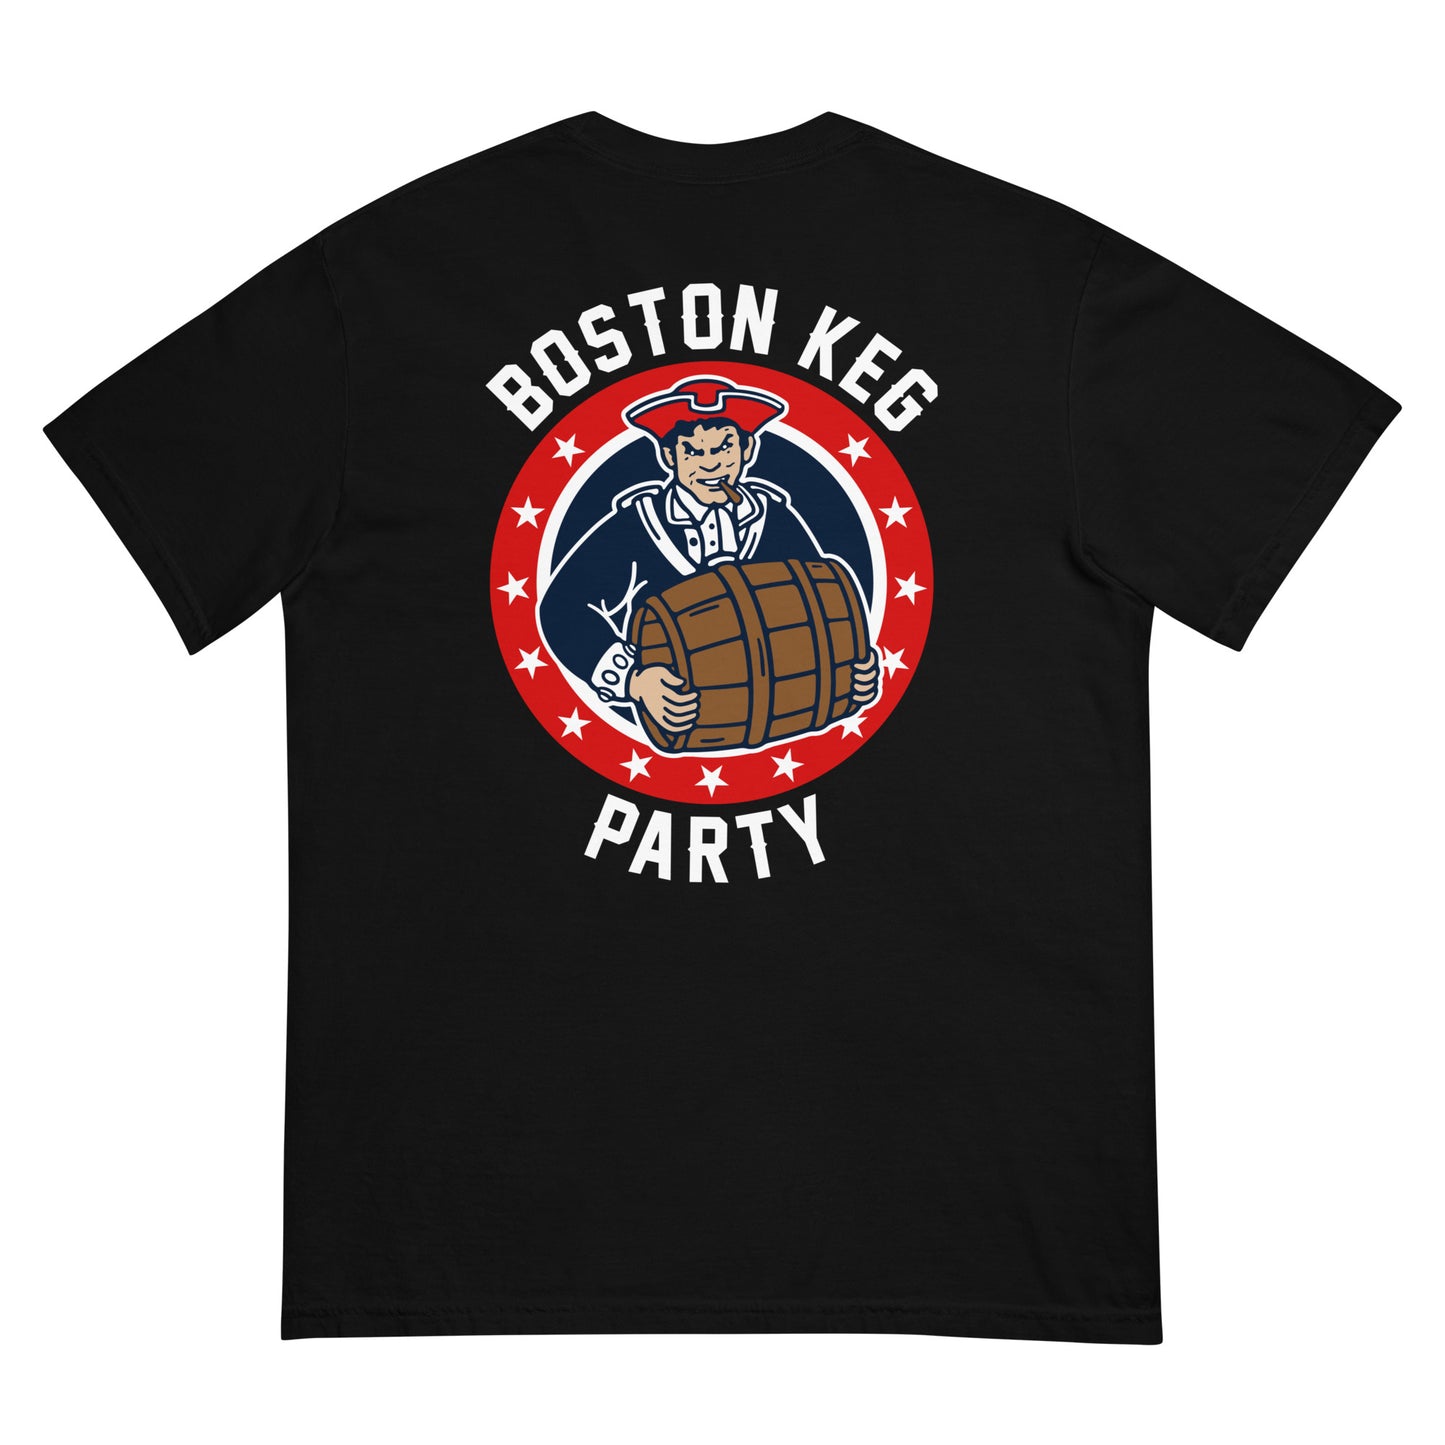 Boston Keg Party II (Front/Back)